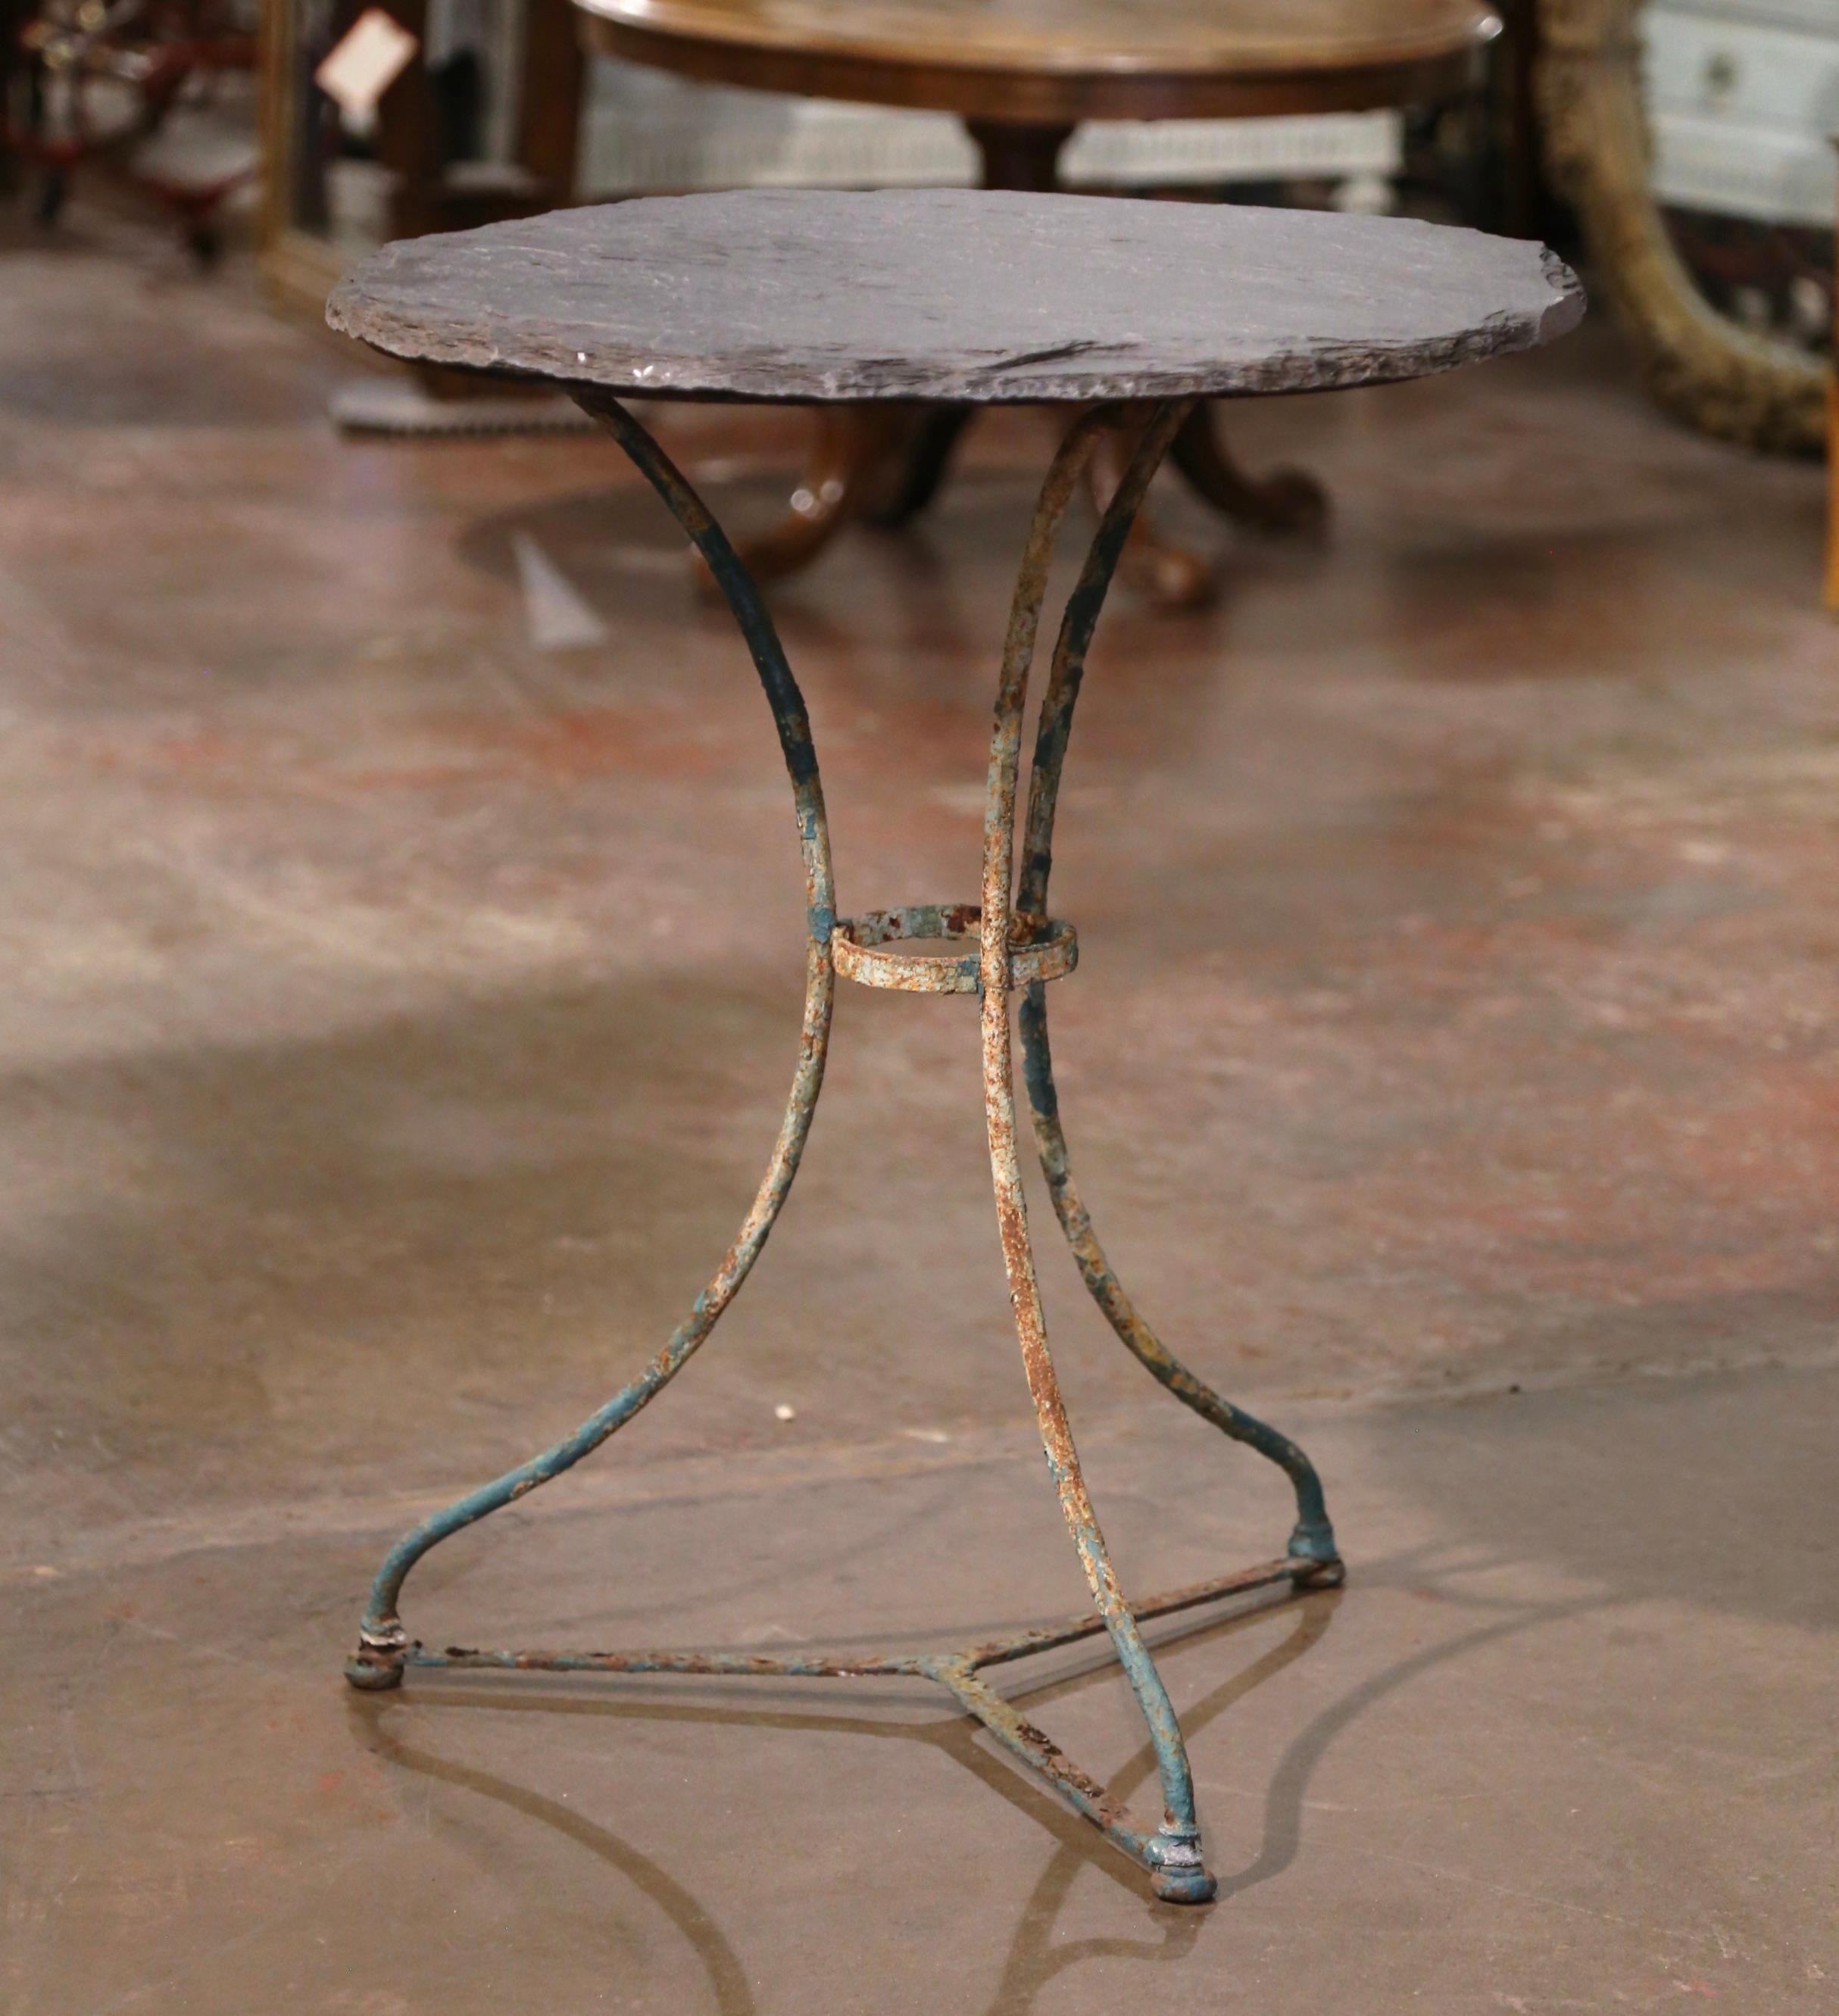 Décorez un patio ou un porche couvert avec cette élégante table bistrot ronde antique. Fabriquée en France vers 1870, la table en fonte repose sur trois pieds en volute reliés par un châssis circulaire. Le plateau de la table est habillé d'un